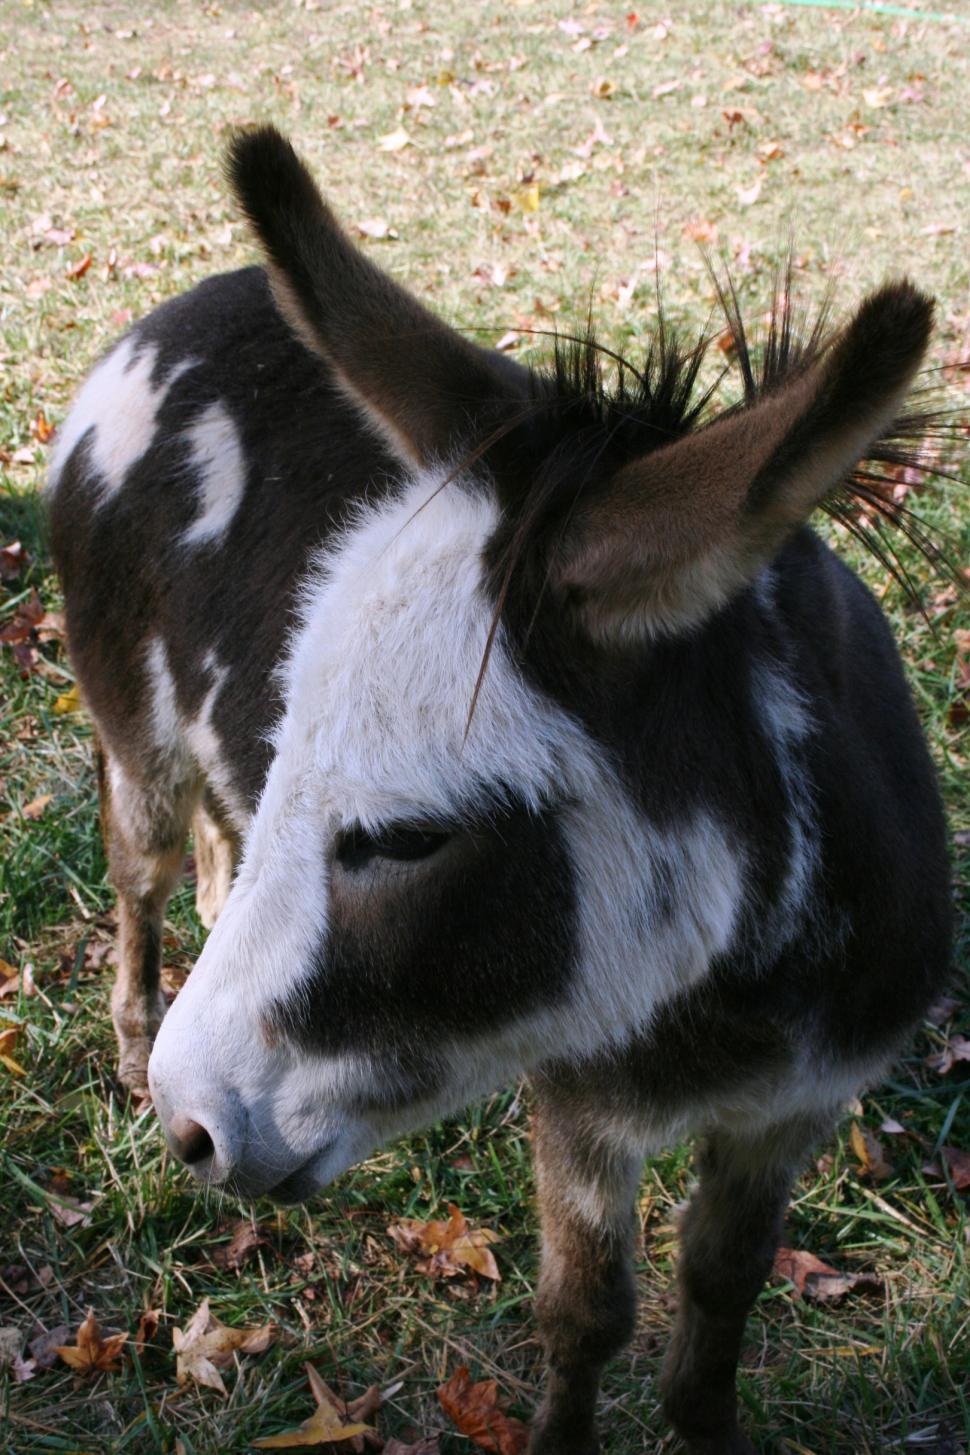 Free Image of Donkey 